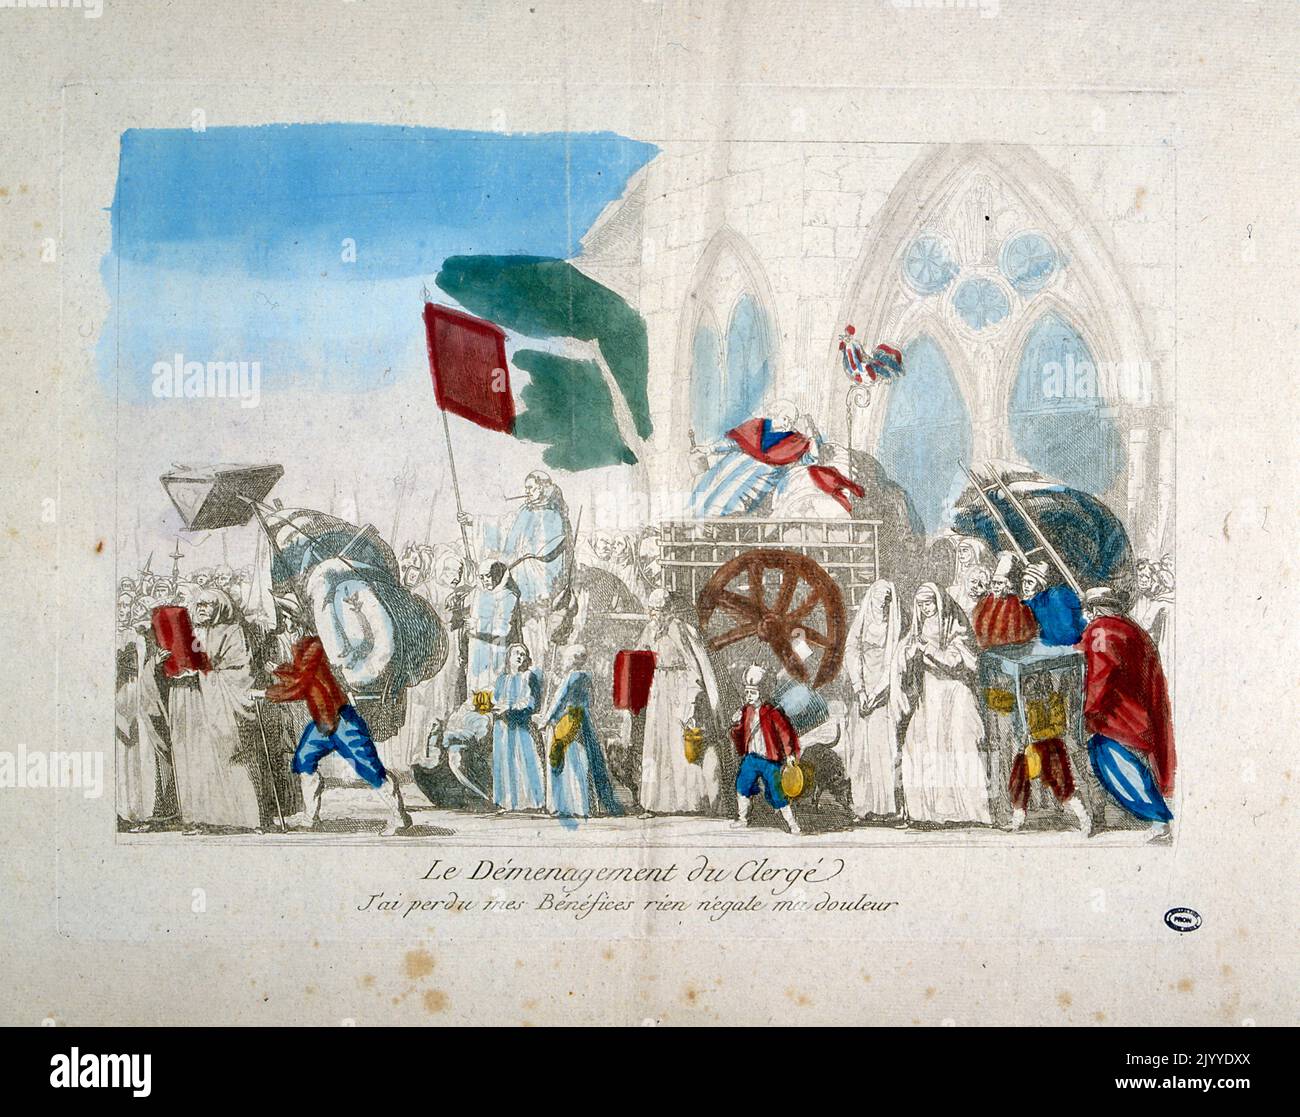 Farbige Illustration, die die Evakuierung des Klerus zu Beginn der Französischen Revolution darstellt. Stockfoto